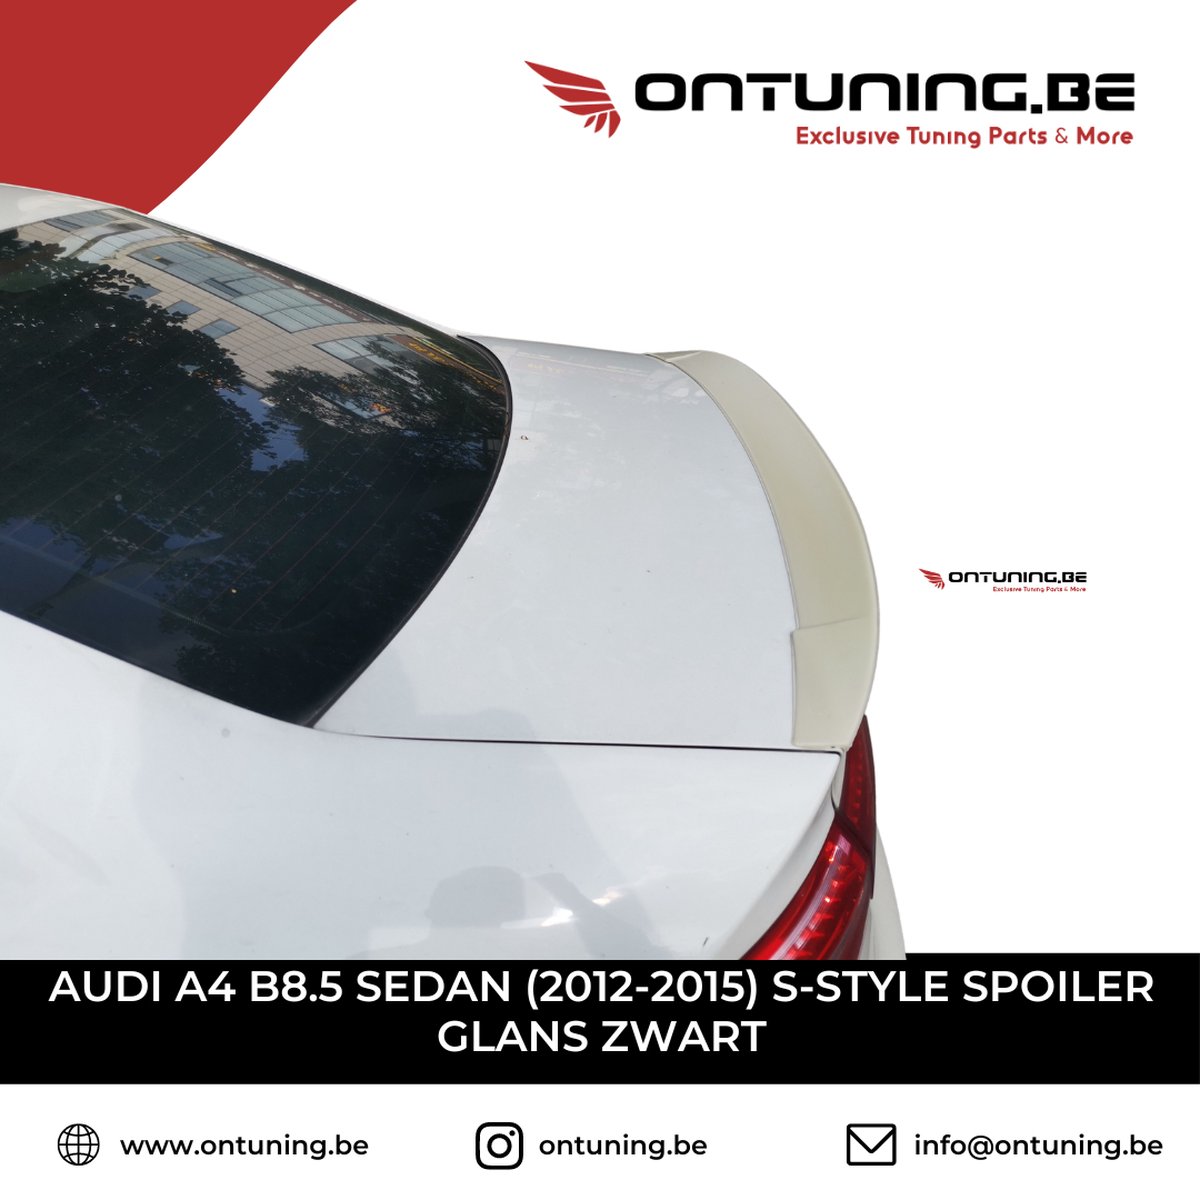 AUDI A4 B8.5 Sedan (2012-2015) S-Style Spoiler Glans Zwart